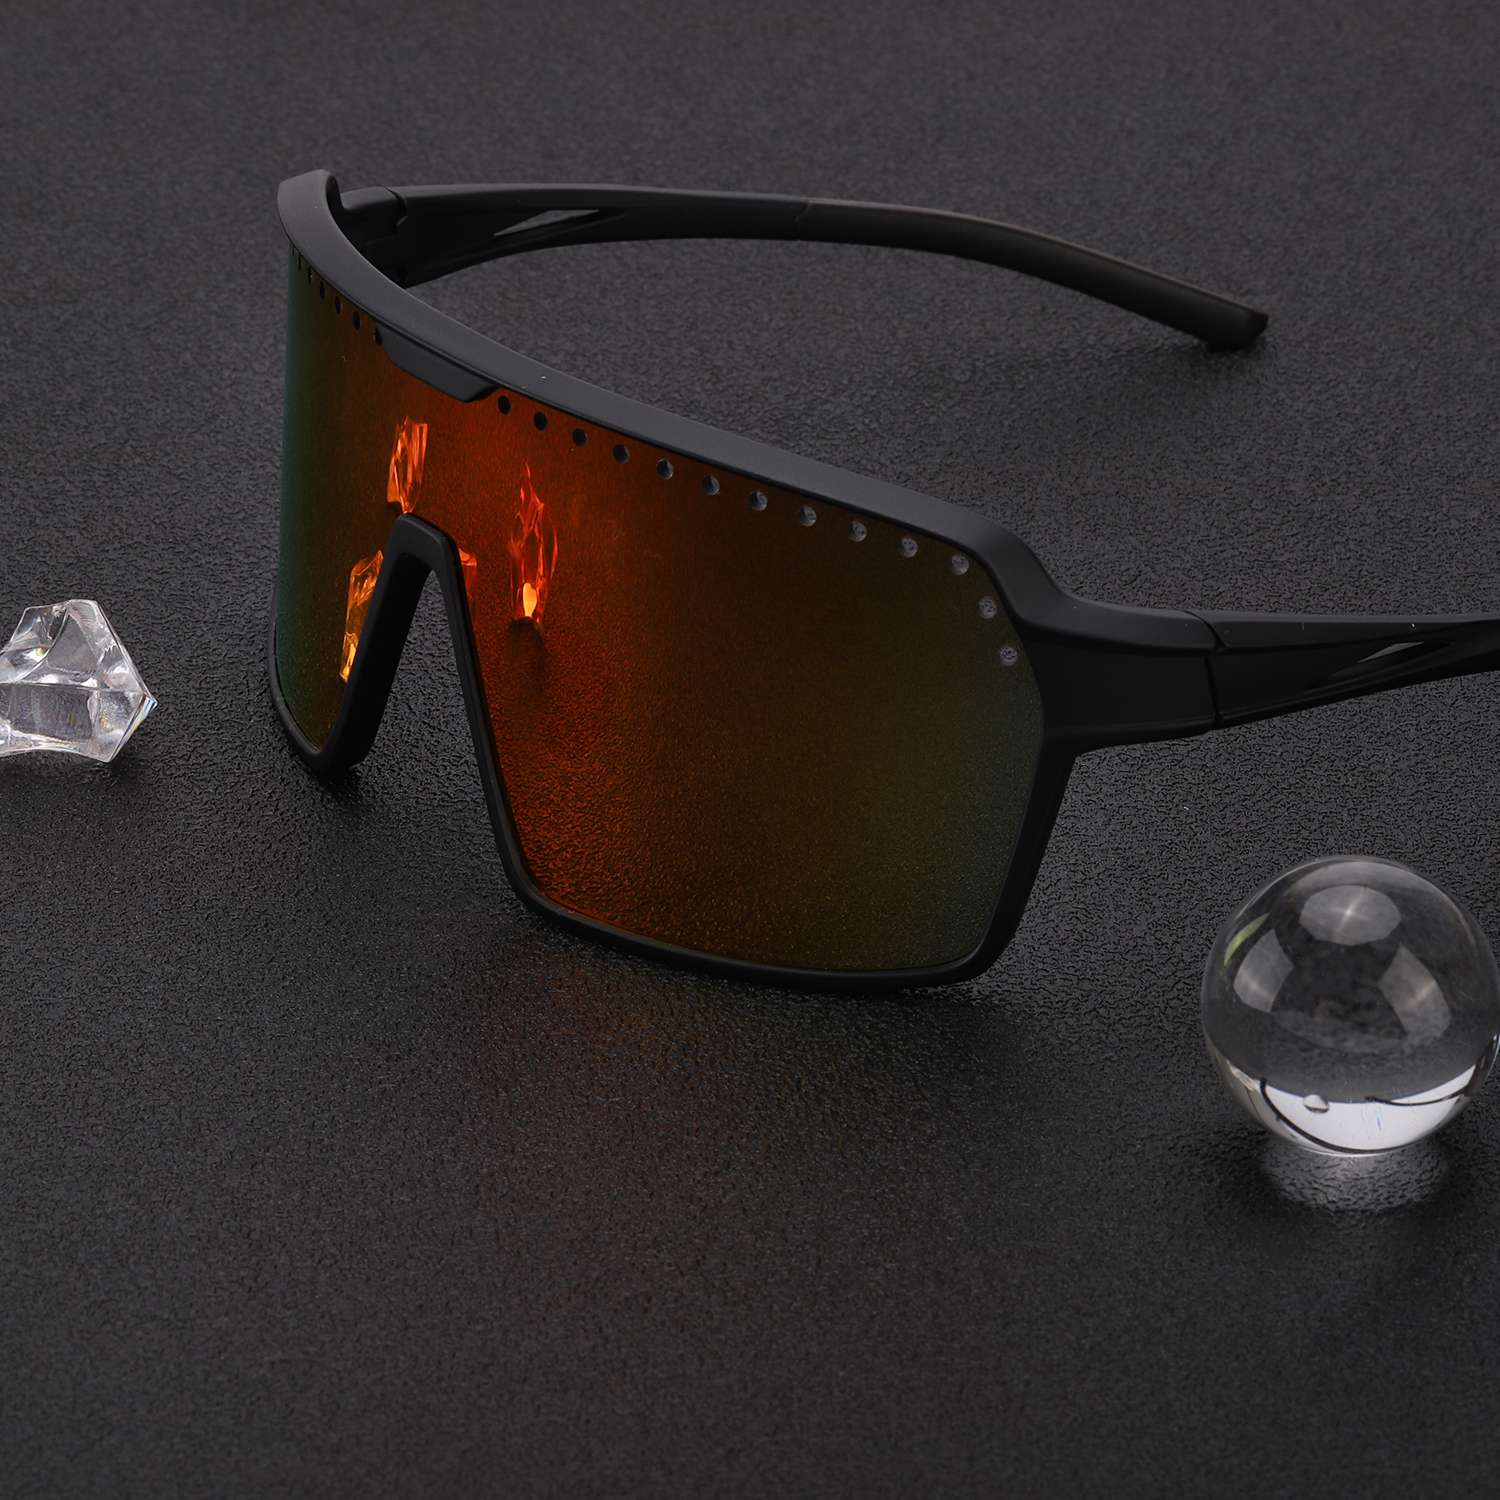 LVIOE Men's Oversized Wrap Sunglasses for Running Fishing Driving, Orange